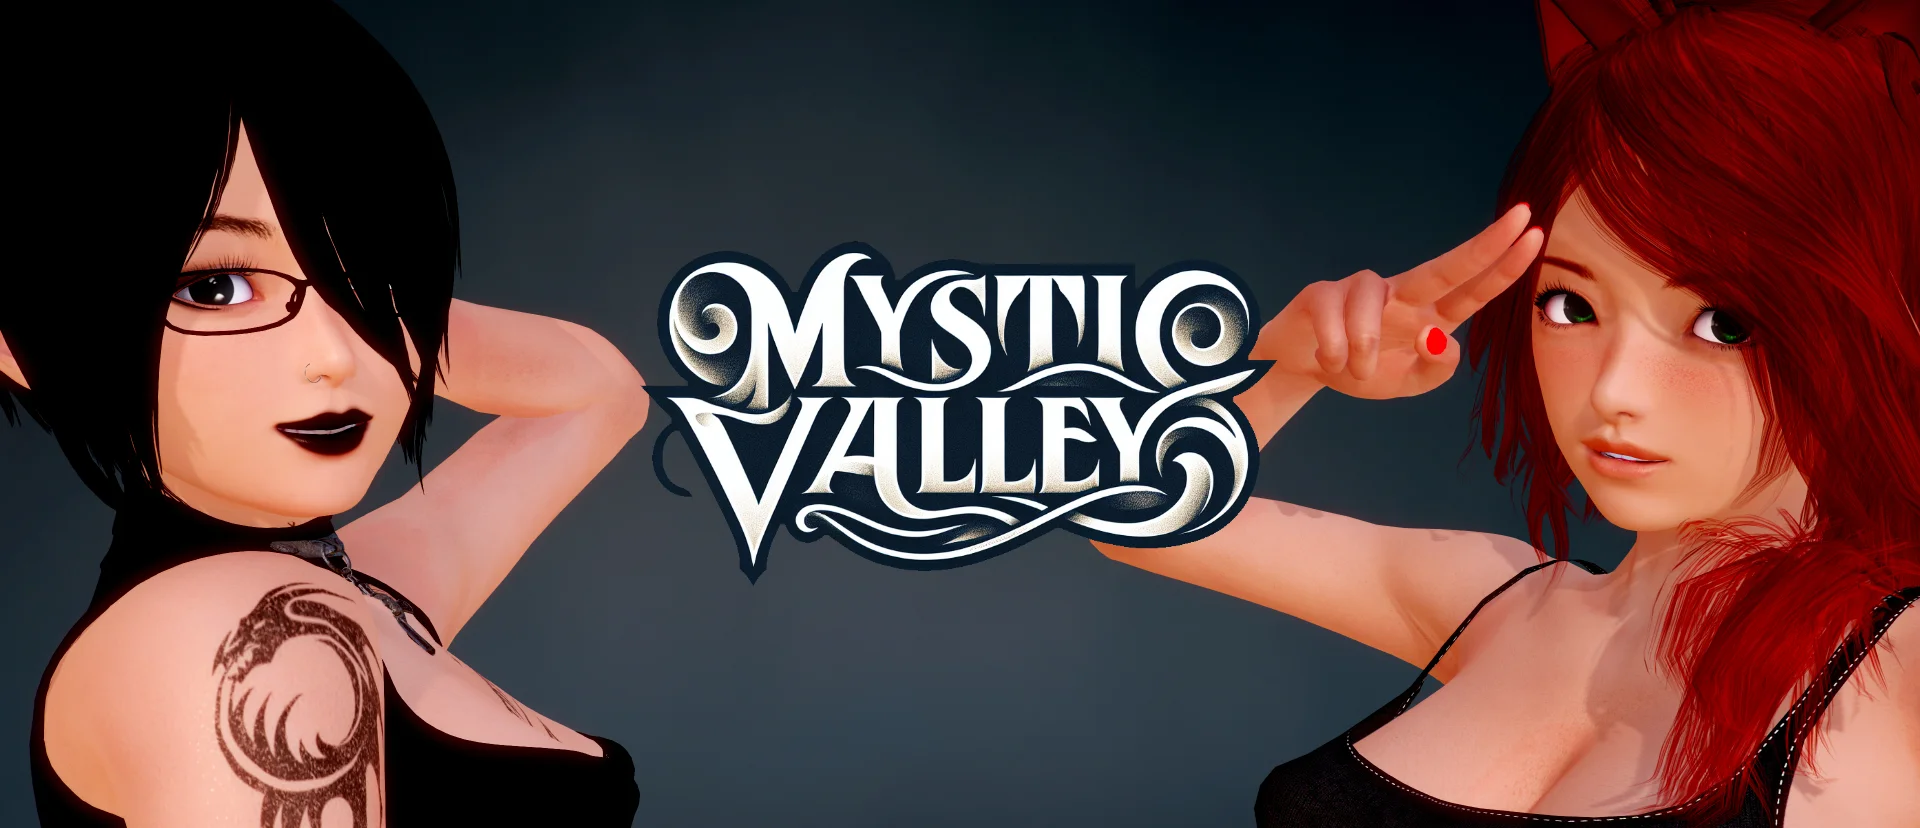 Download Mystic Valley